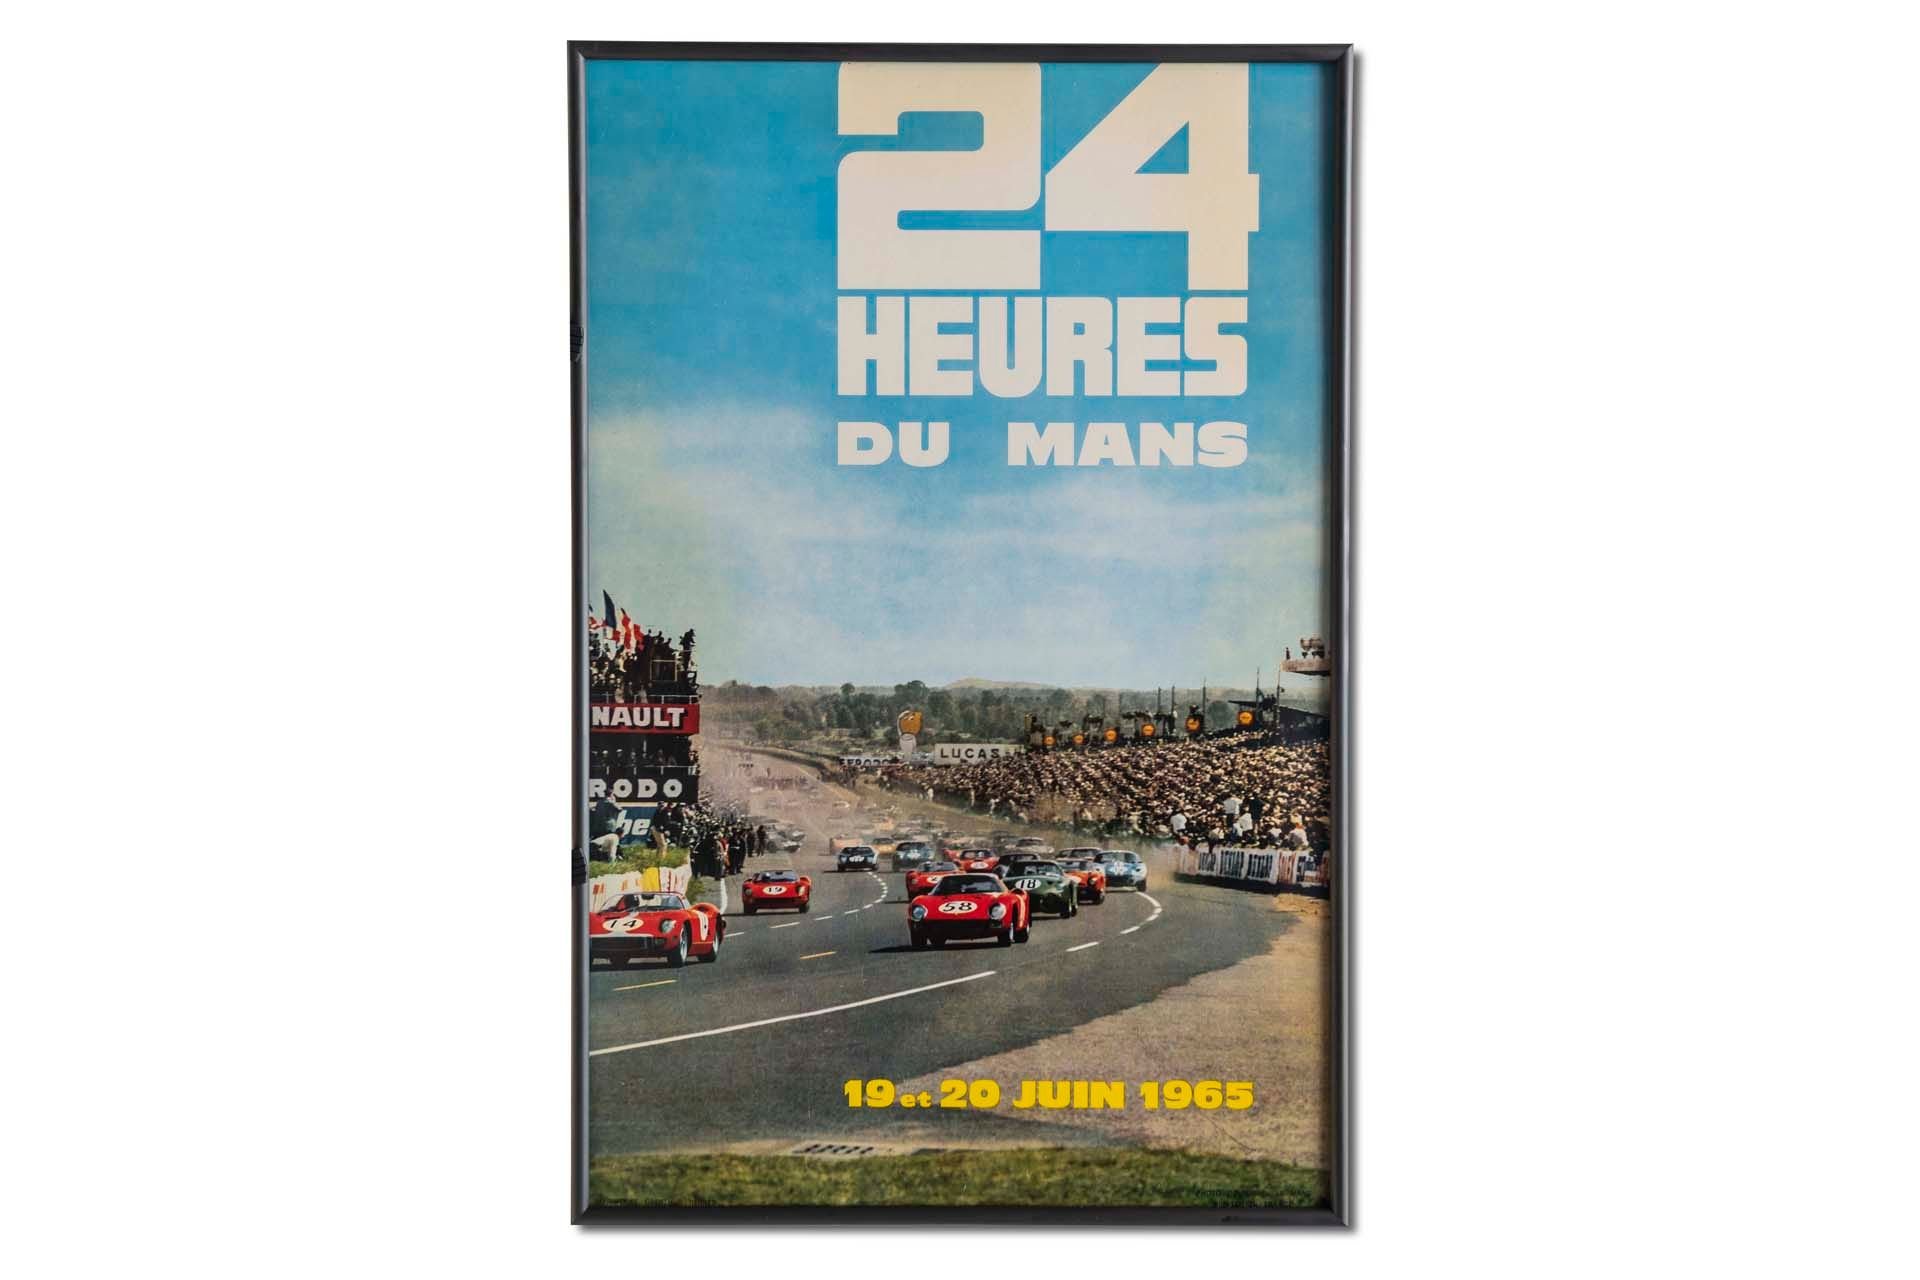 For Sale Framed Original '1965 24 heures du Mans' Event Poster